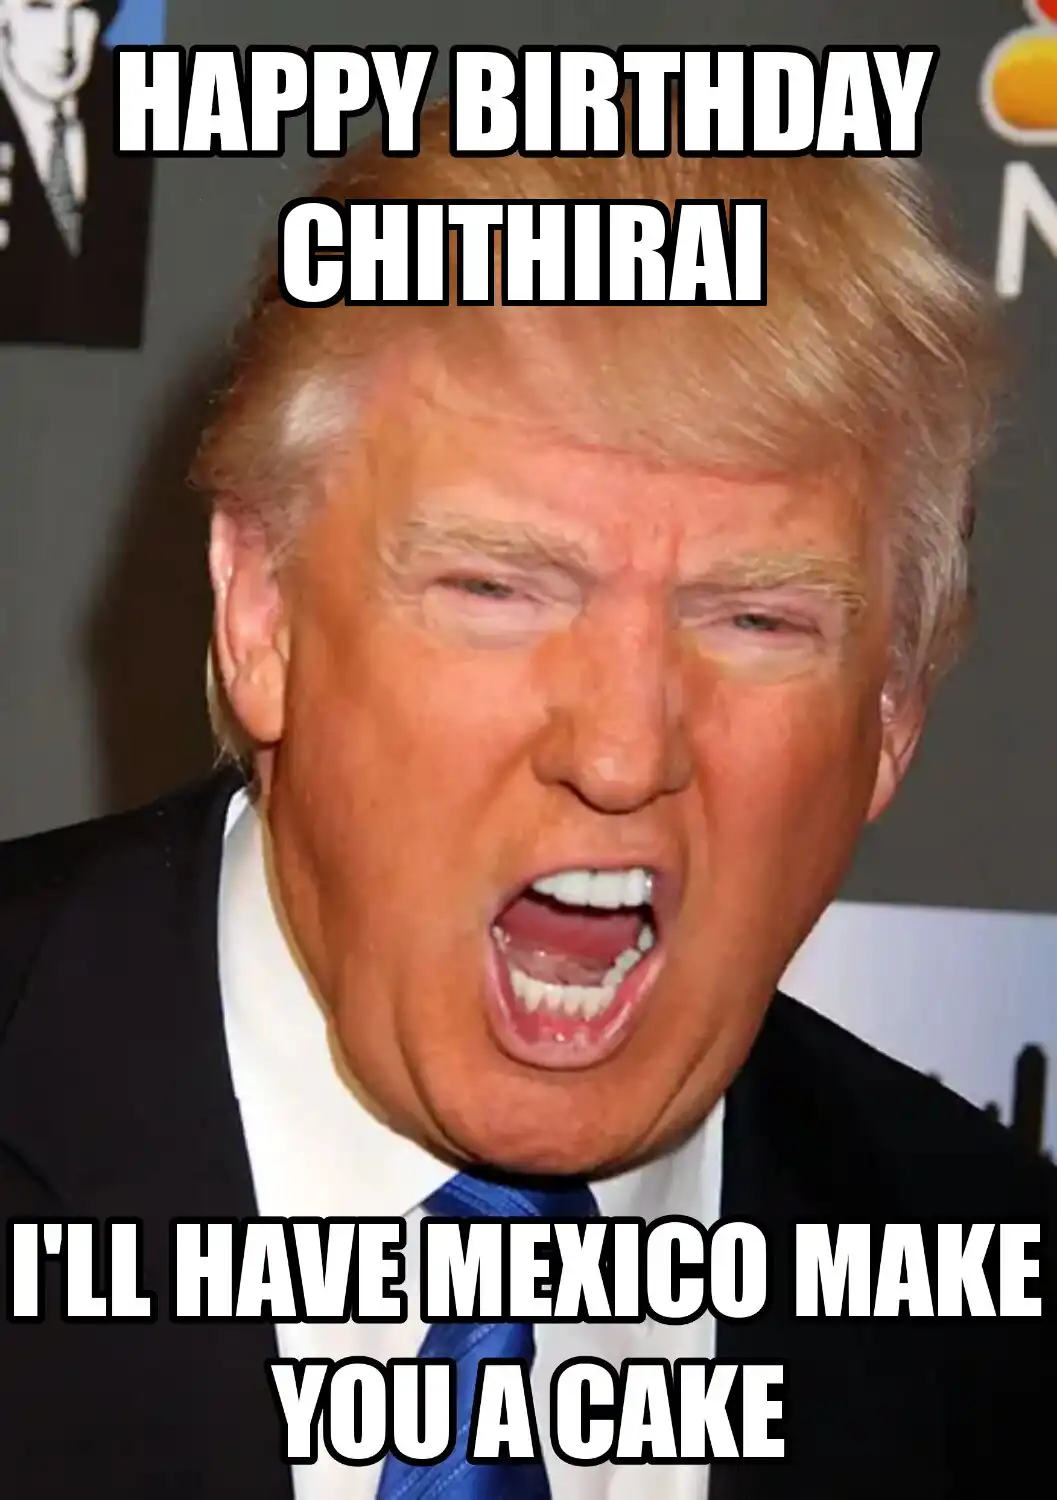 Happy Birthday Chithirai Mexico Make You A Cake Meme